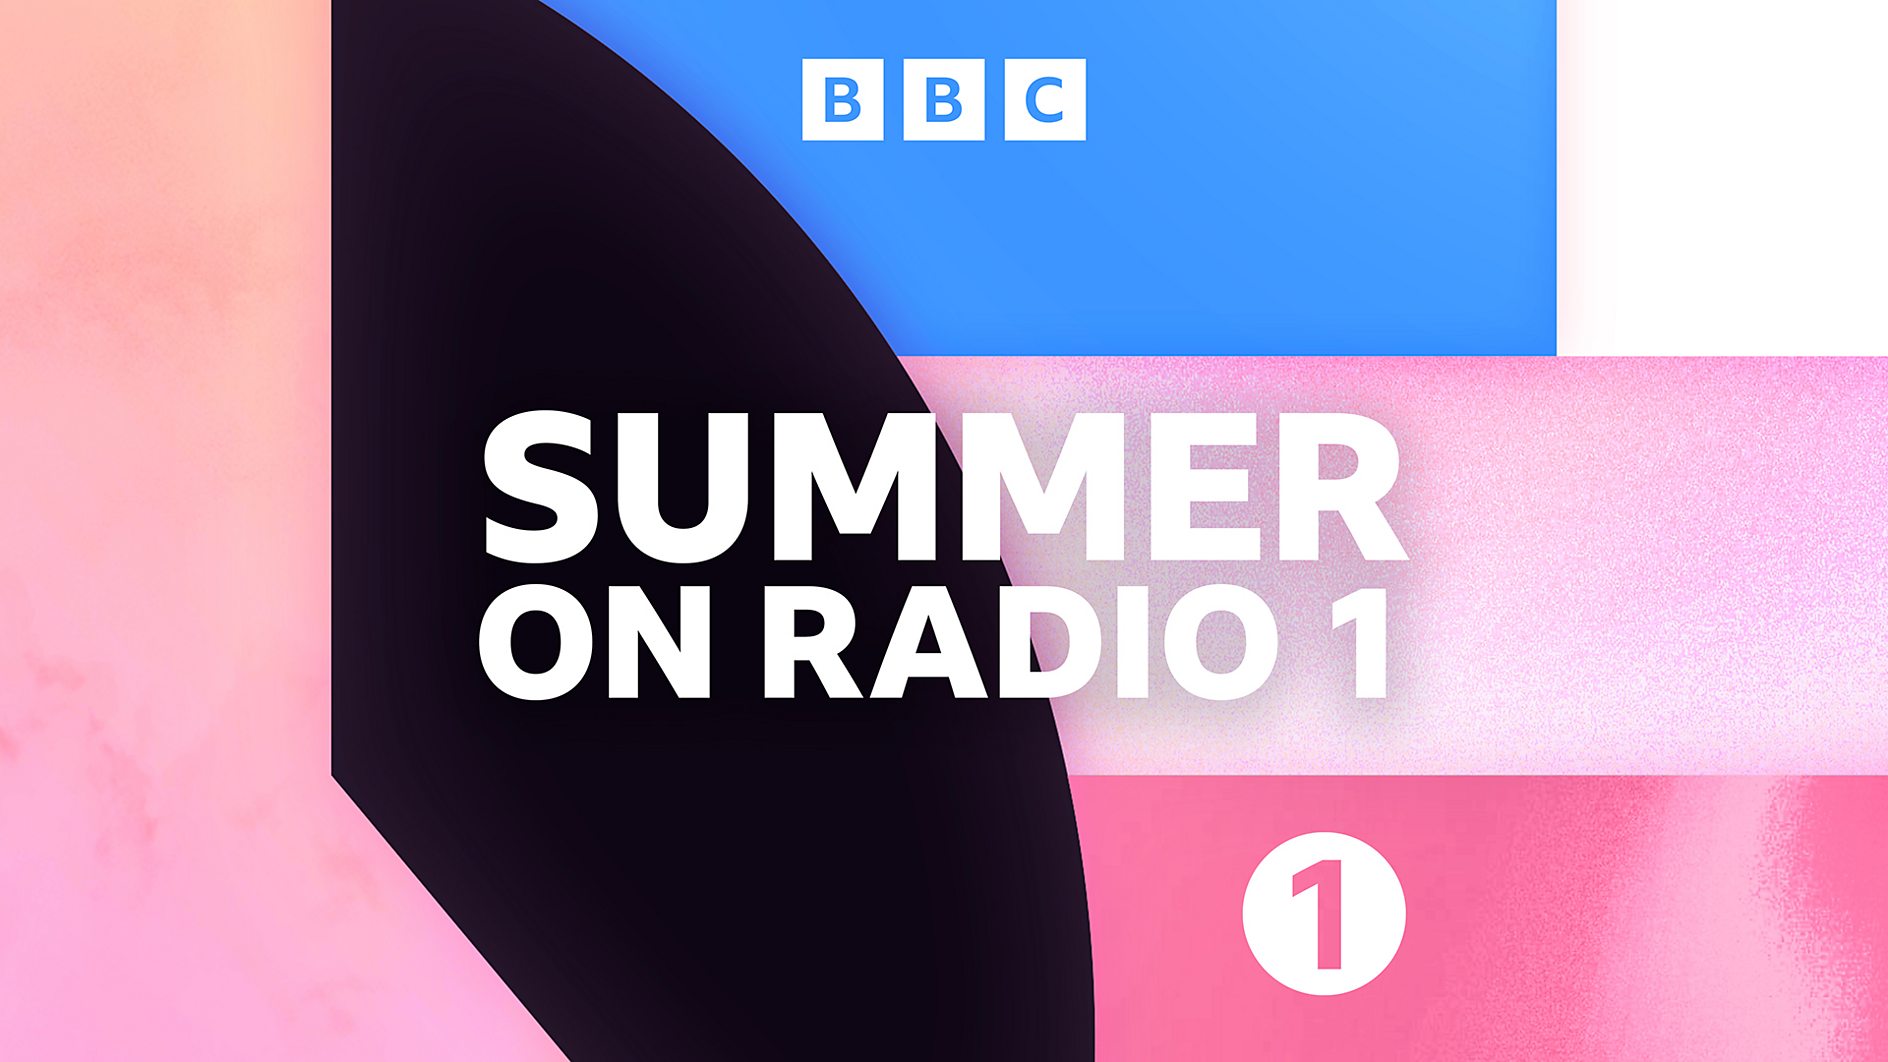 BBC Radio 1 unveils new summer schedule